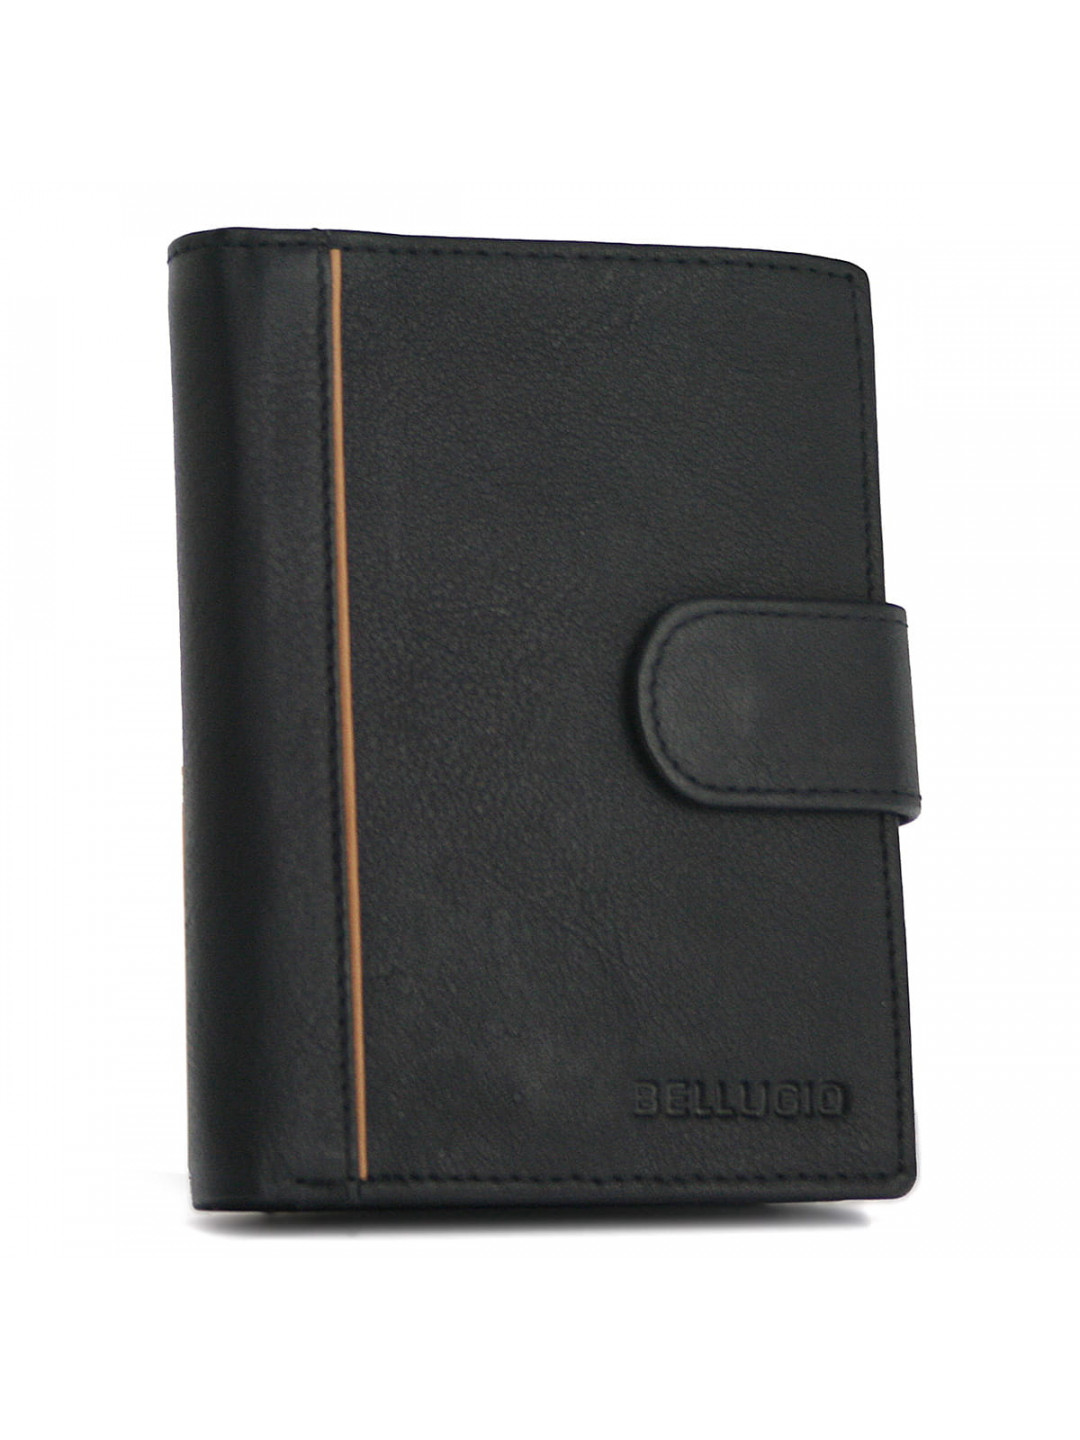 Pánská kožená peněženka černá – Bellugio Kartel